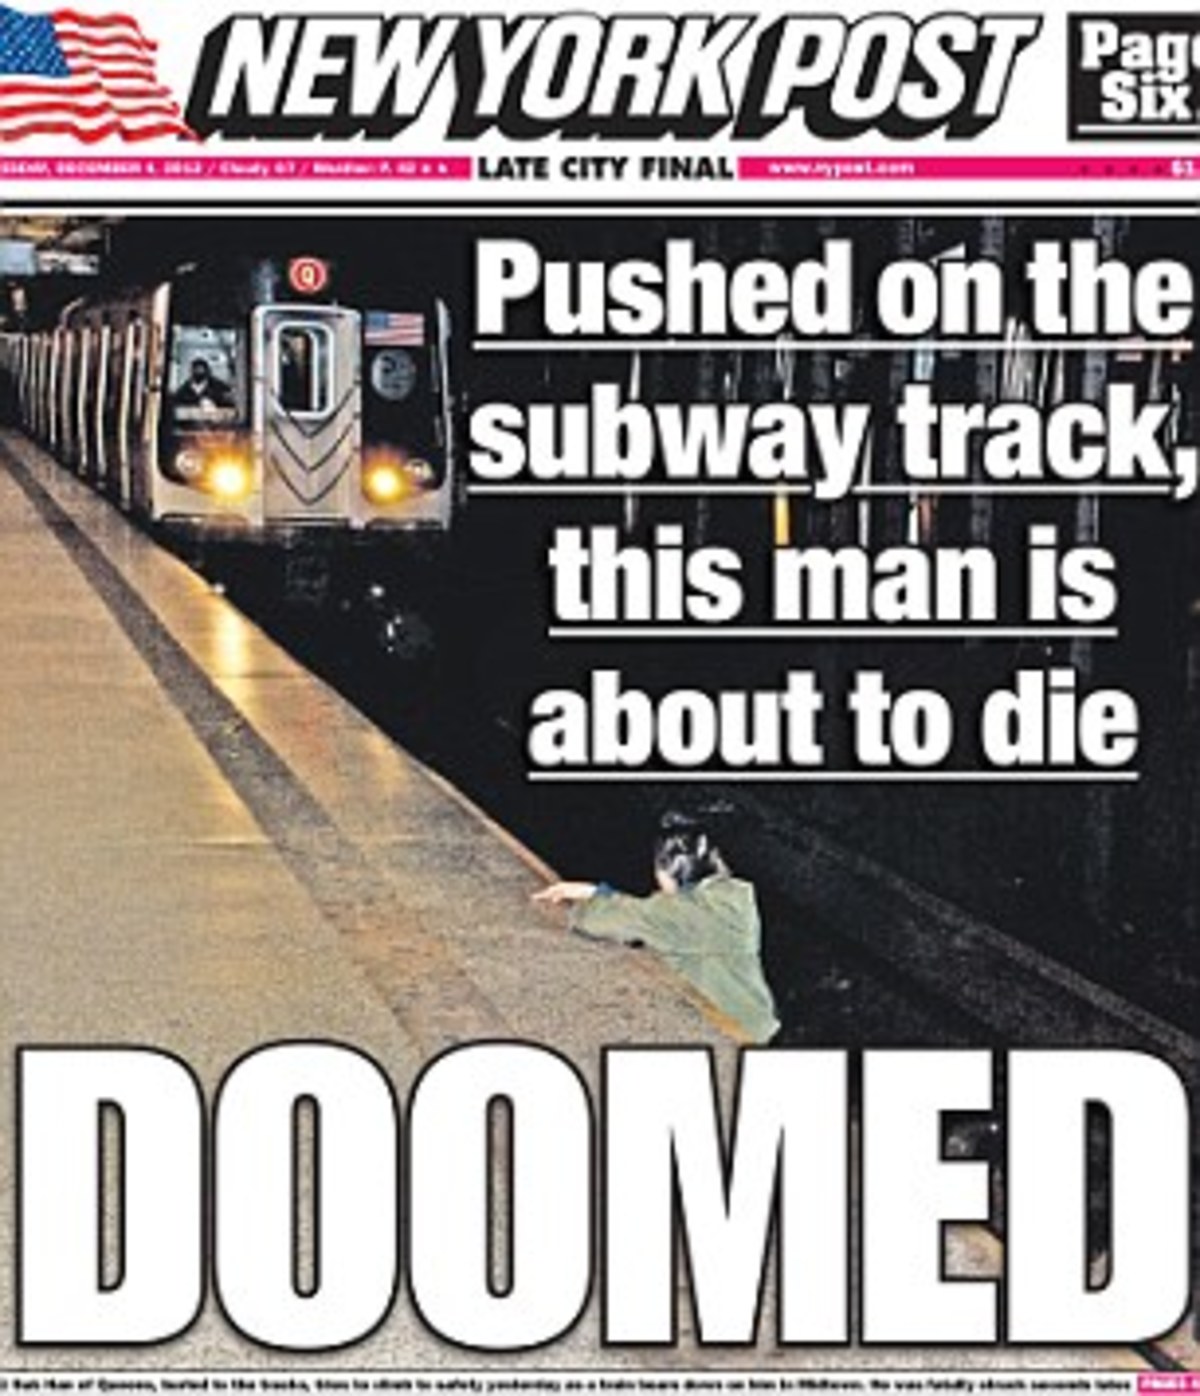 Σάλος από φωτογραφία της New York Post με άνδρα να πεθαίνει στις ράγες του Μετρό